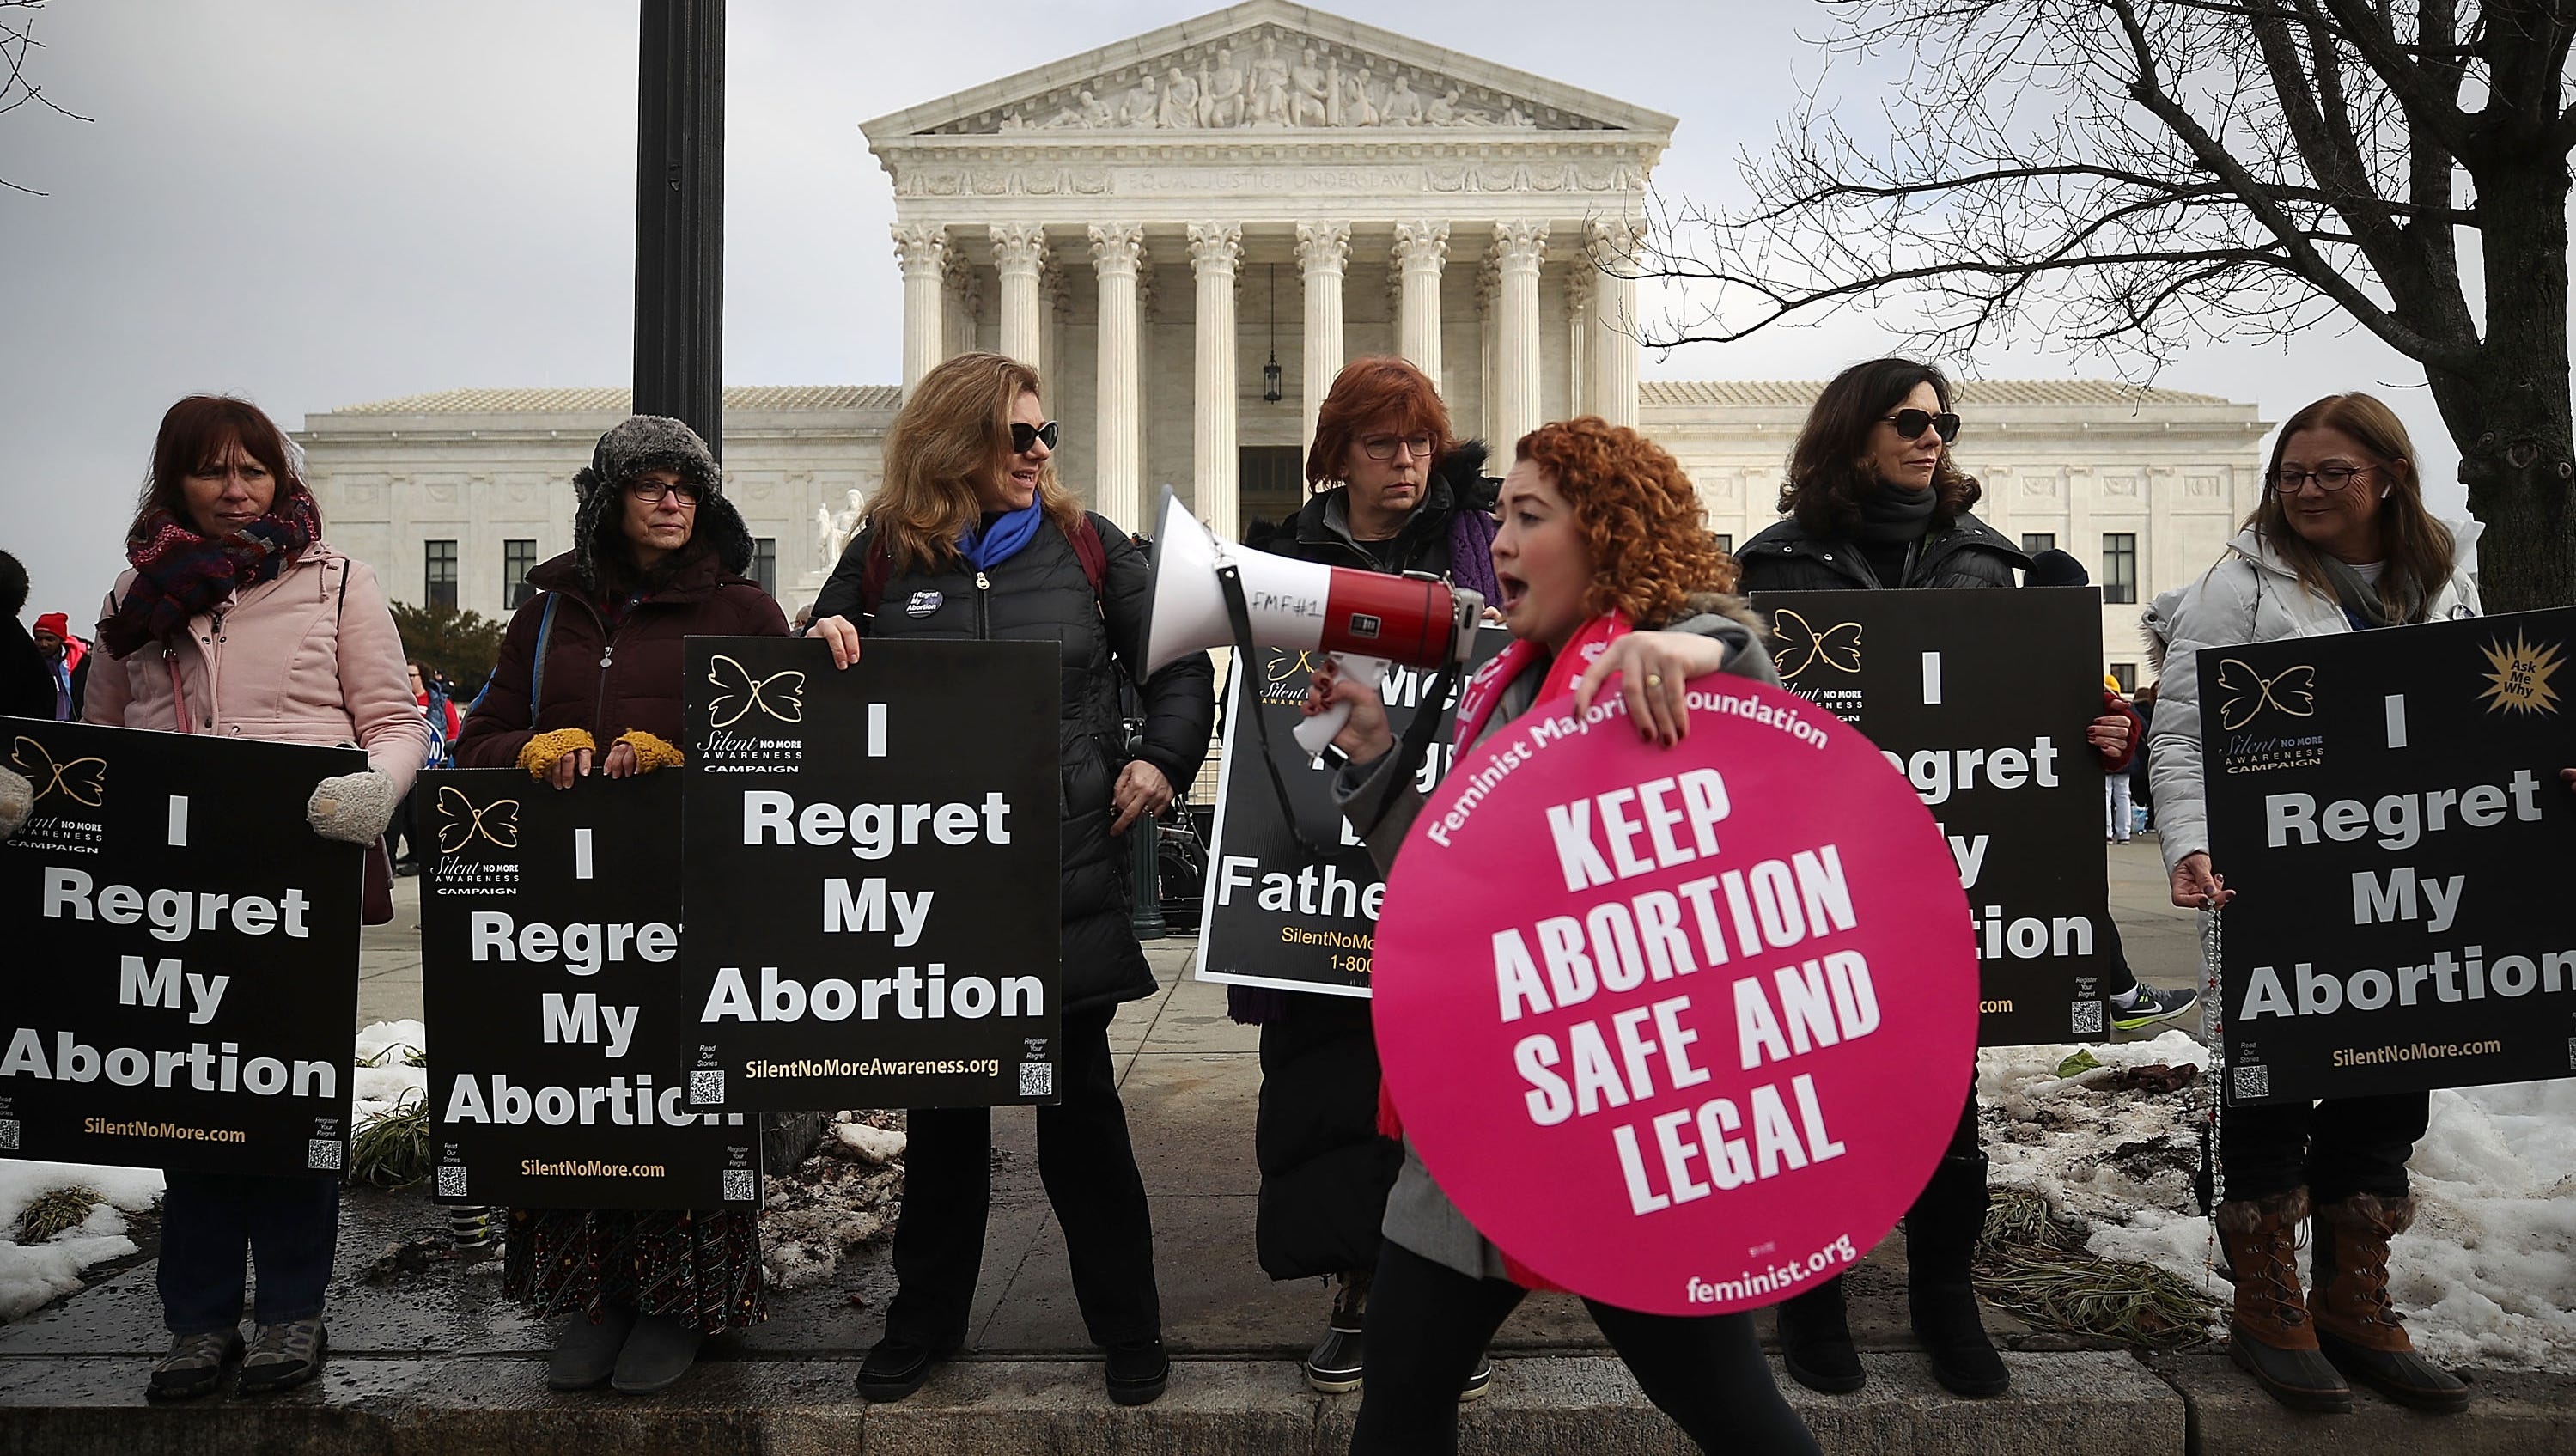 Activists shifting abortion debate to human rights